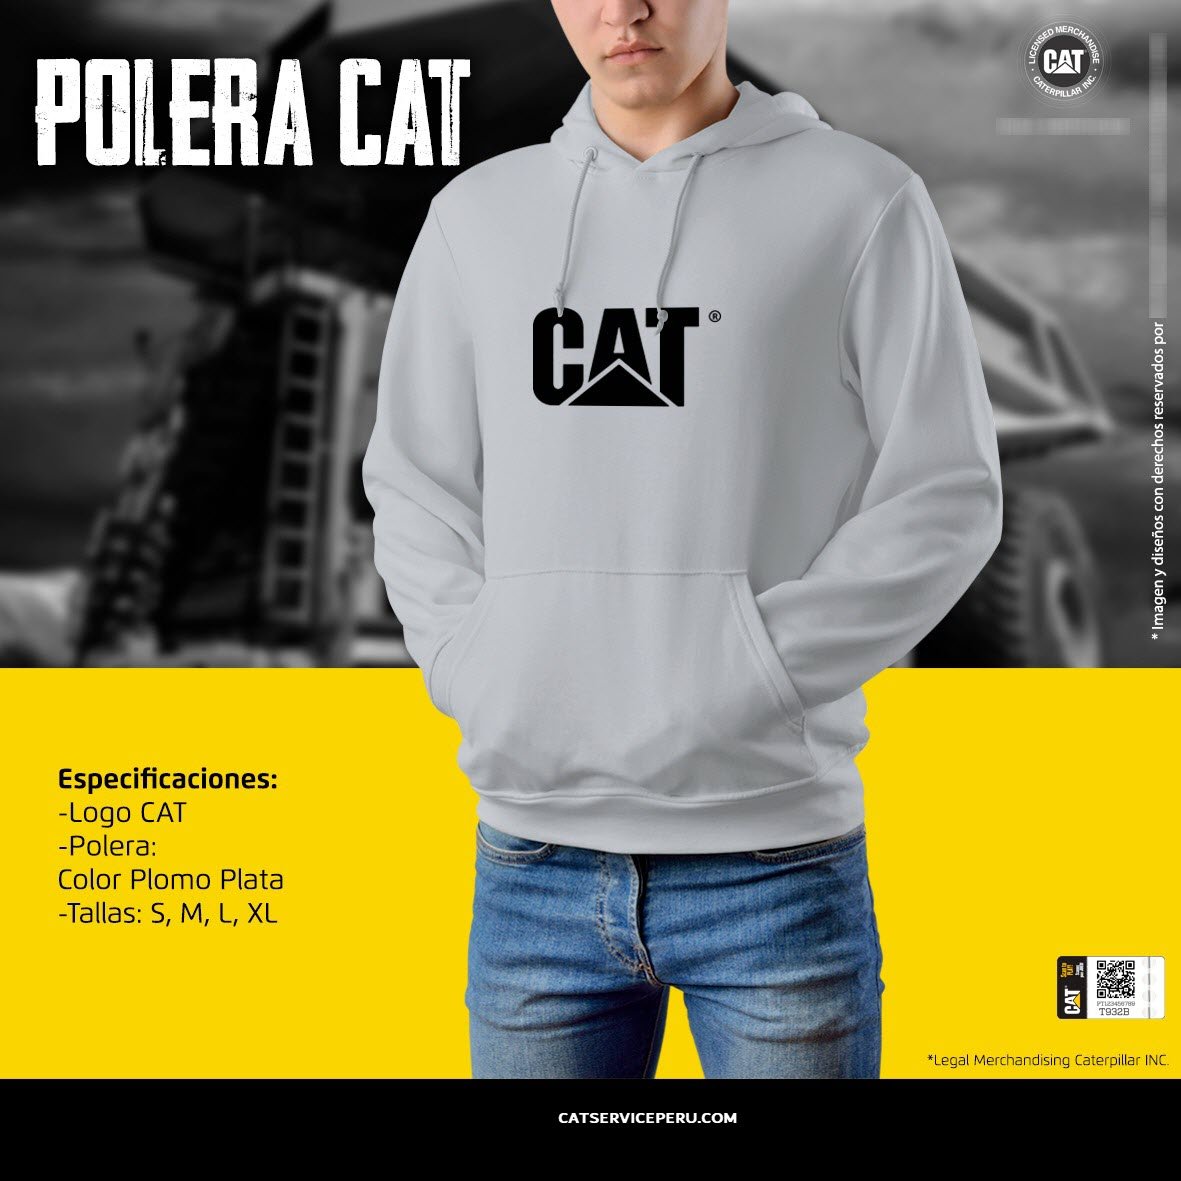 Polera Cat Plomo Plata - CAT SERVICE PERU S.A.C.